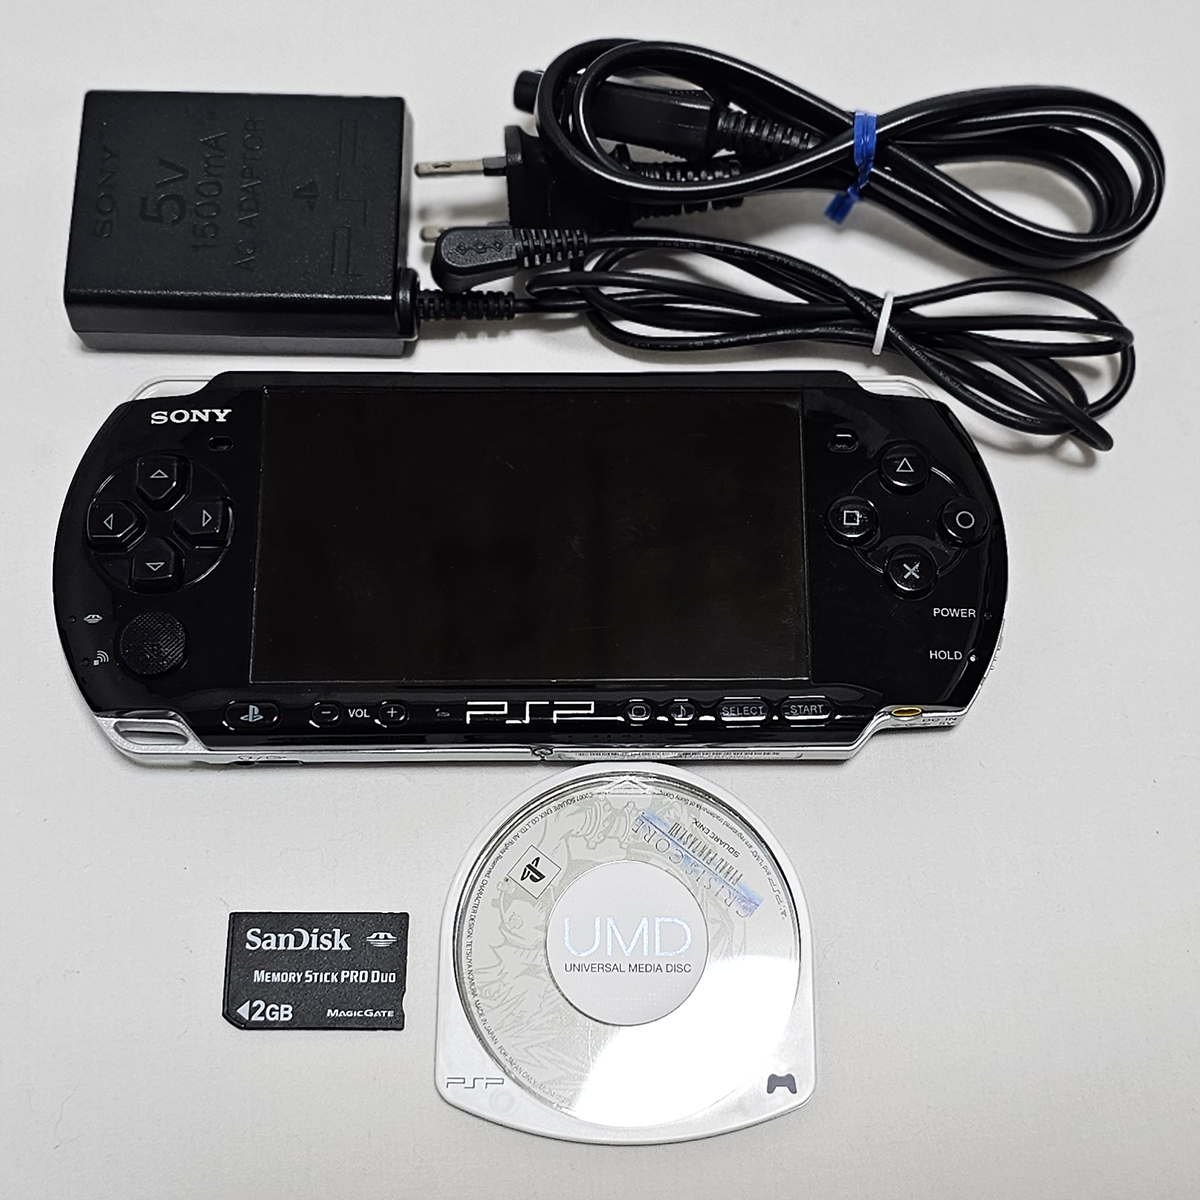 中古 PSP 本体 と クライシスコアファイナルファンタジーソフトセット 充電池なし PSP-3000 CCFF7 ソニー ゲーム機 プレイステーション_画像1